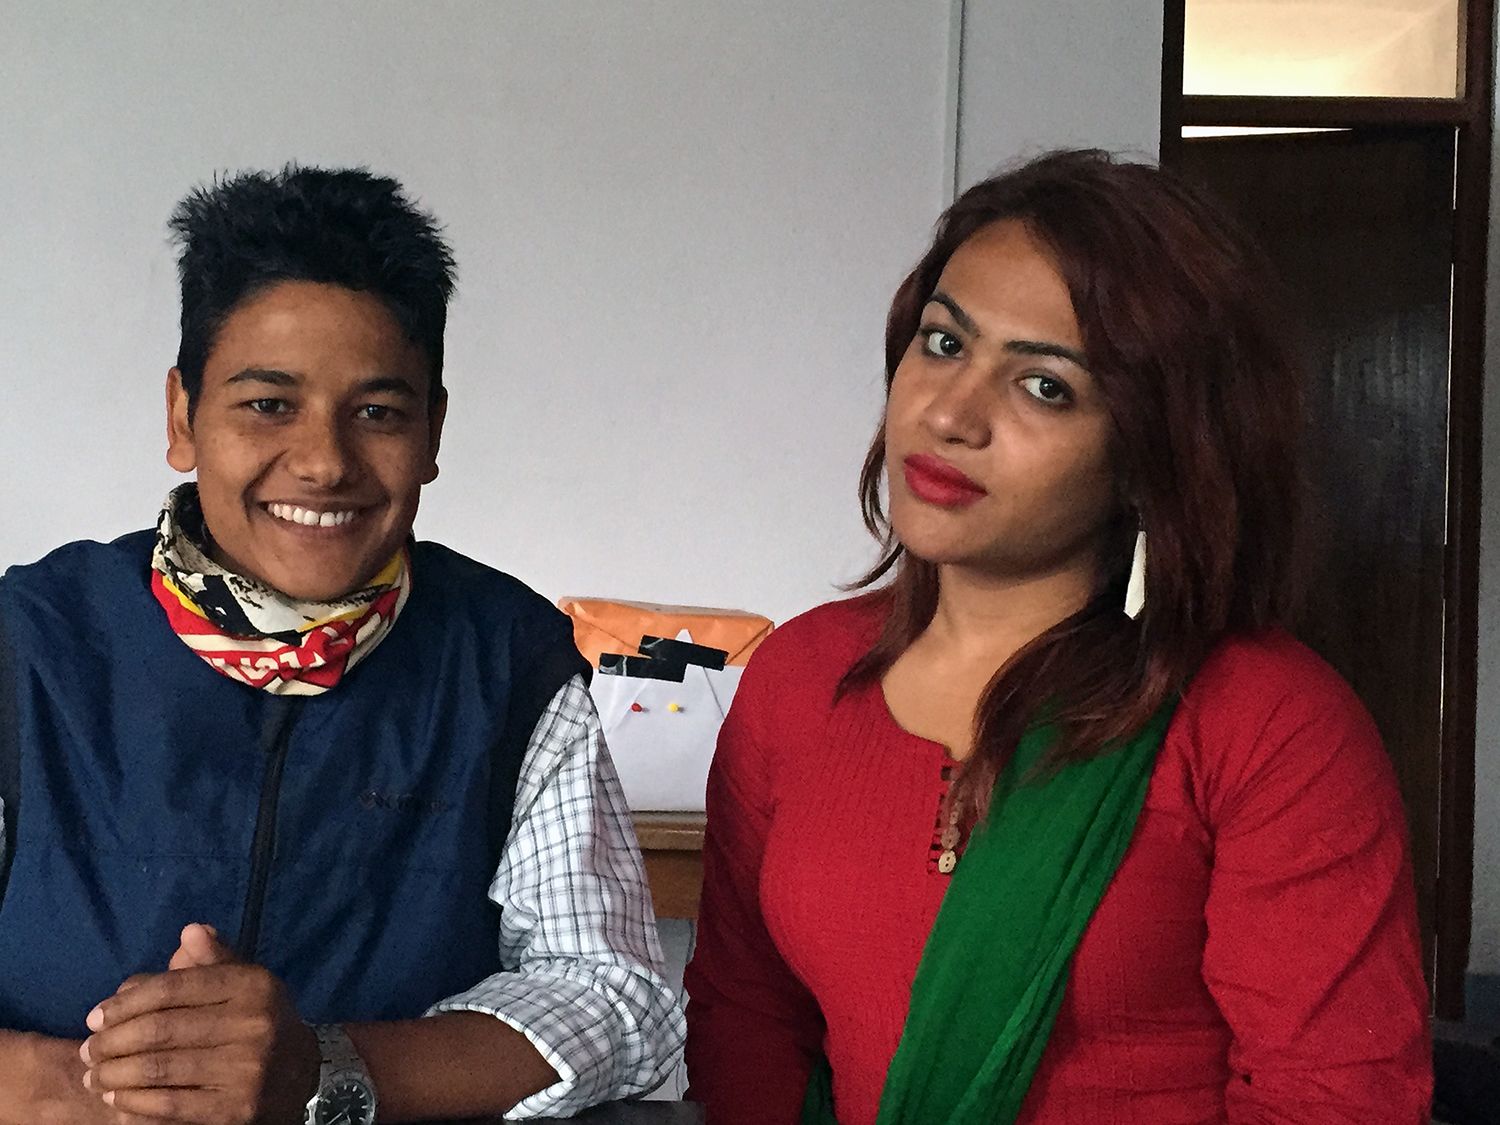 Nepal Big Women Sex - Nepal offers 'third gender' option | CNN